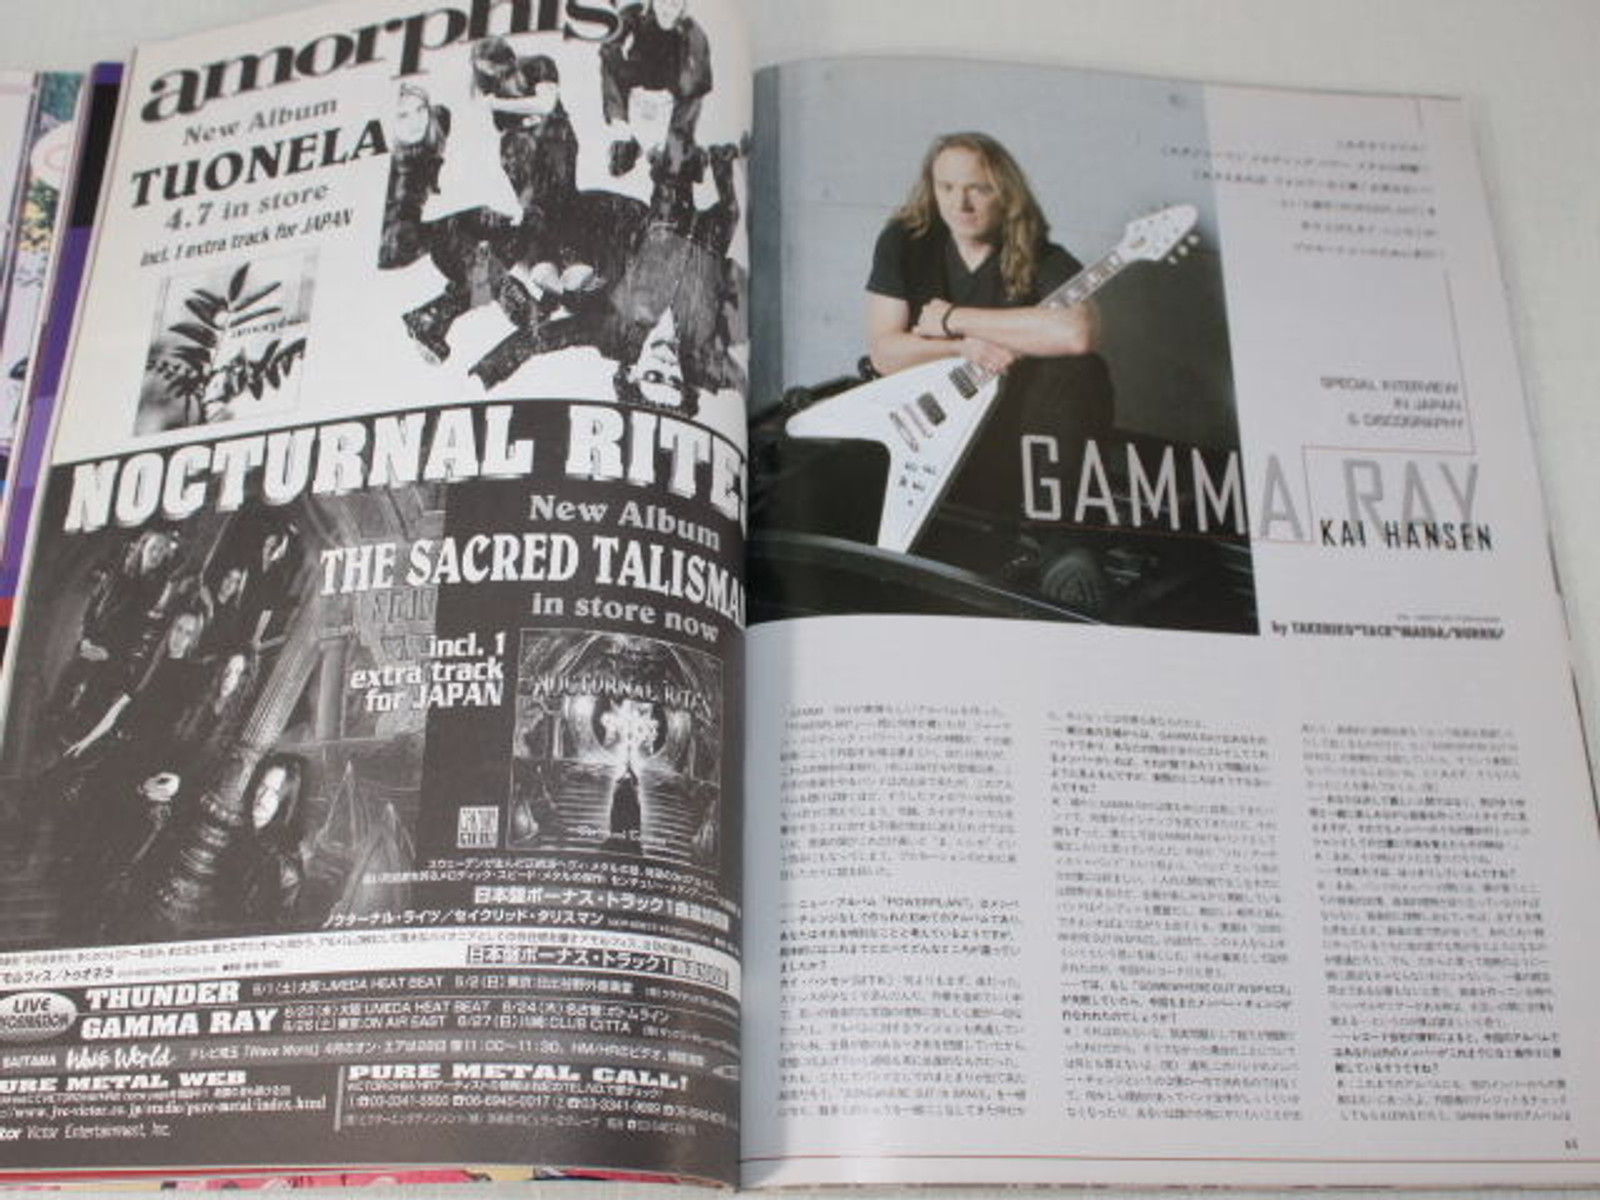 1999/05 BURRN! Japan Rock Magazine RATT/JOHN SYKES/IRON MAIDEN/KREATOR